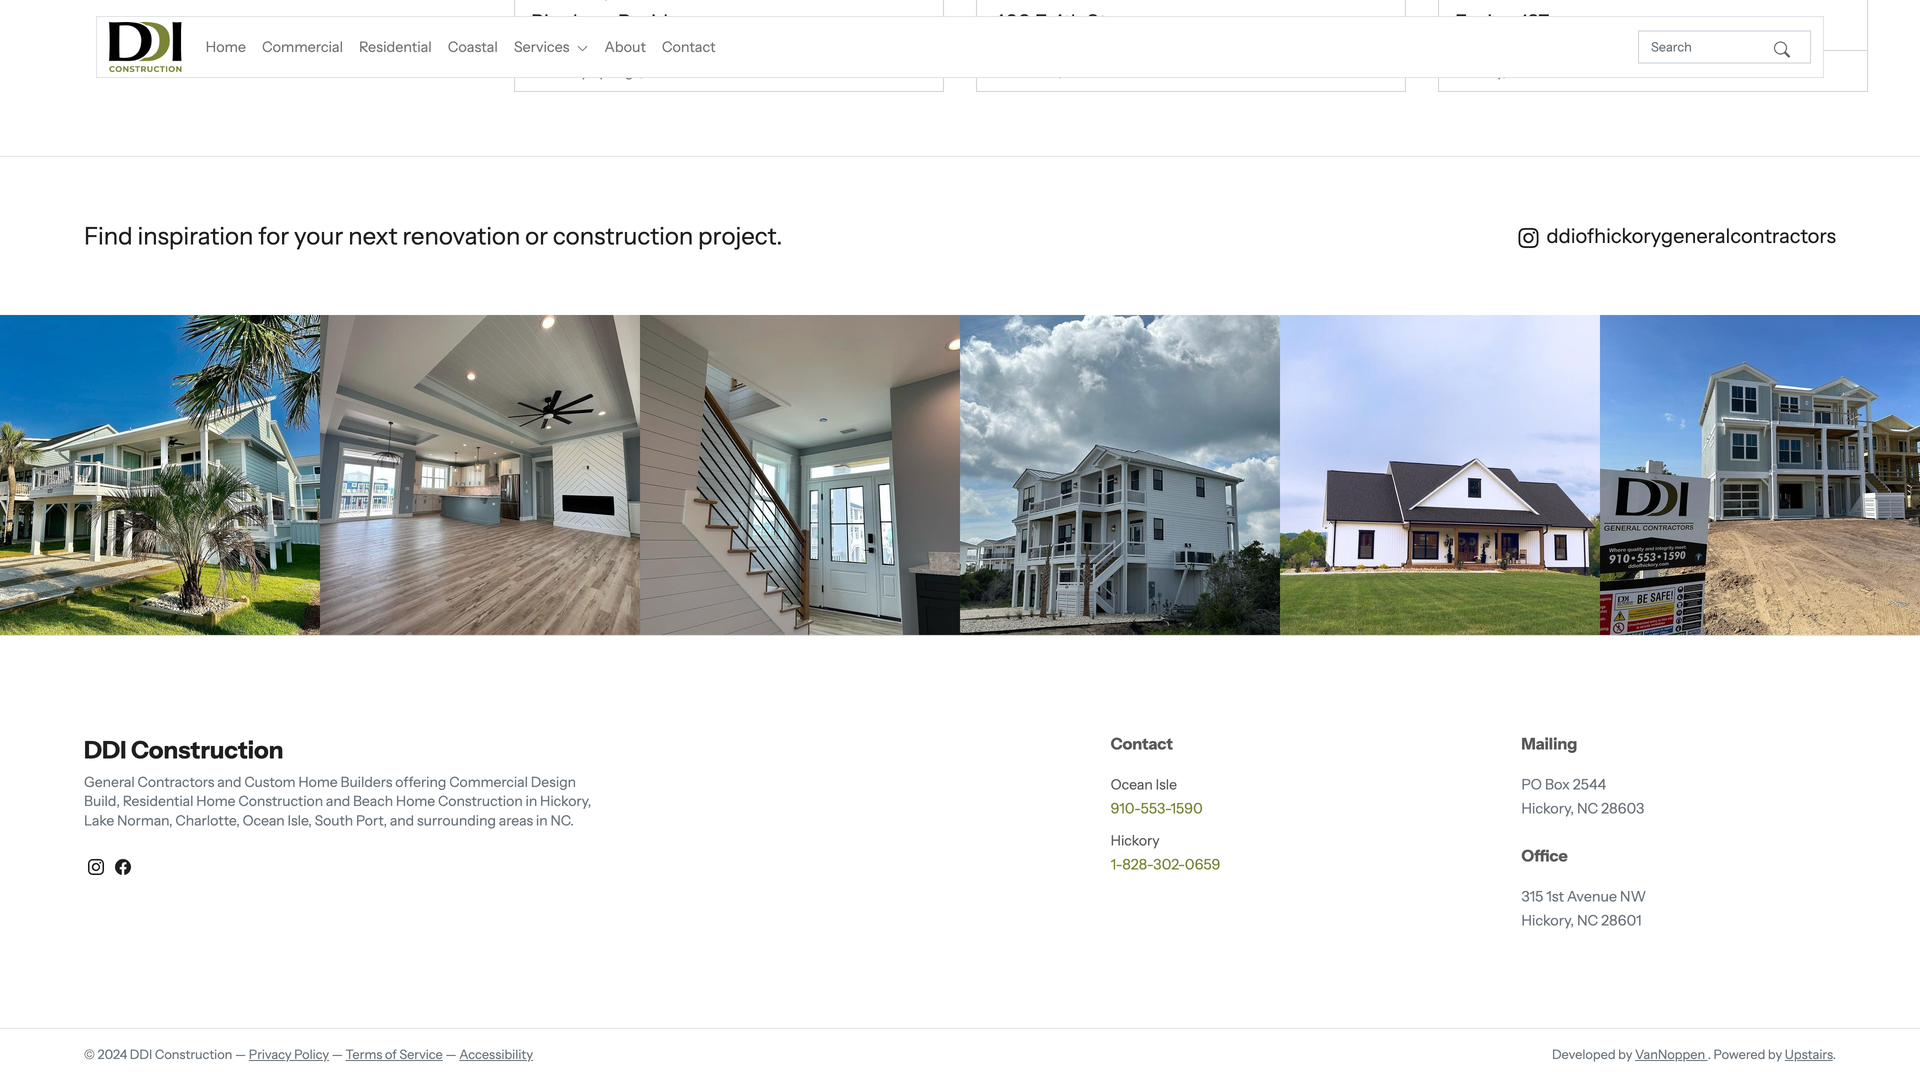 DDI Construction Website Instagram integration